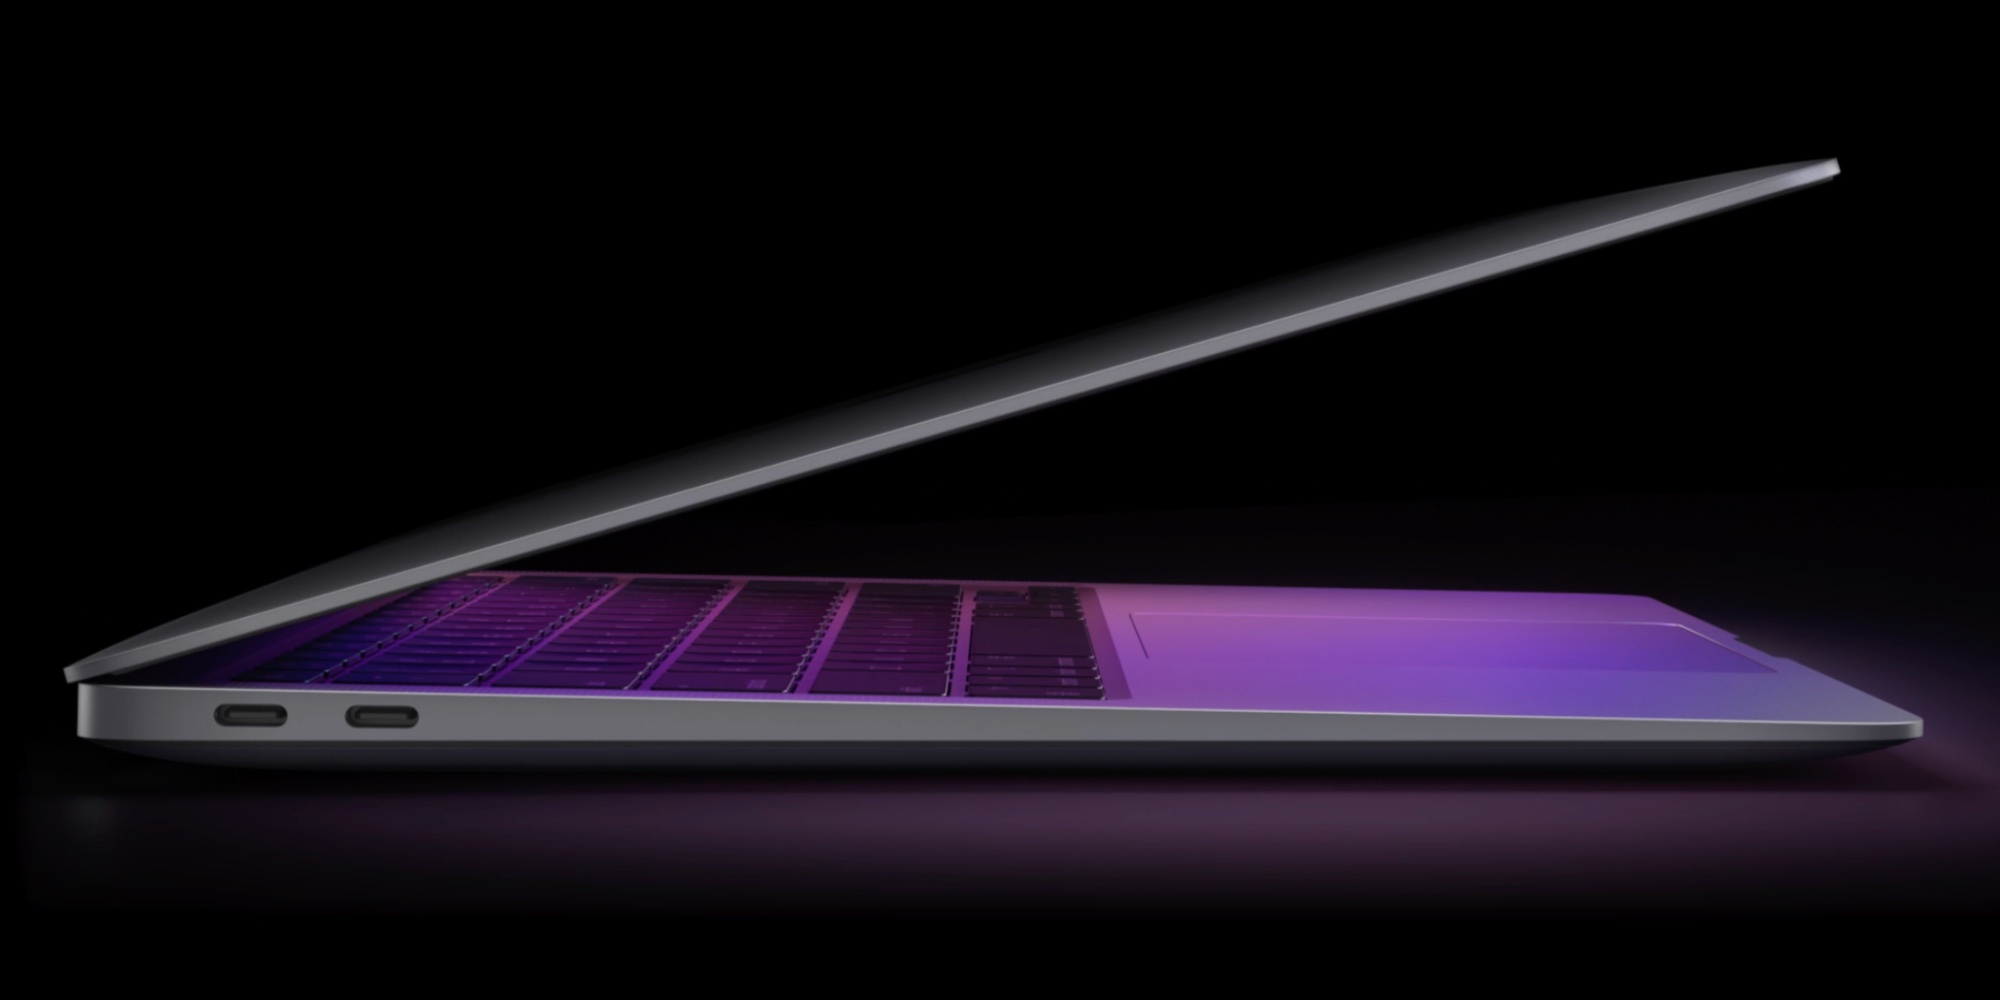 Apple's M1 MacBook Air is an even better value following $100